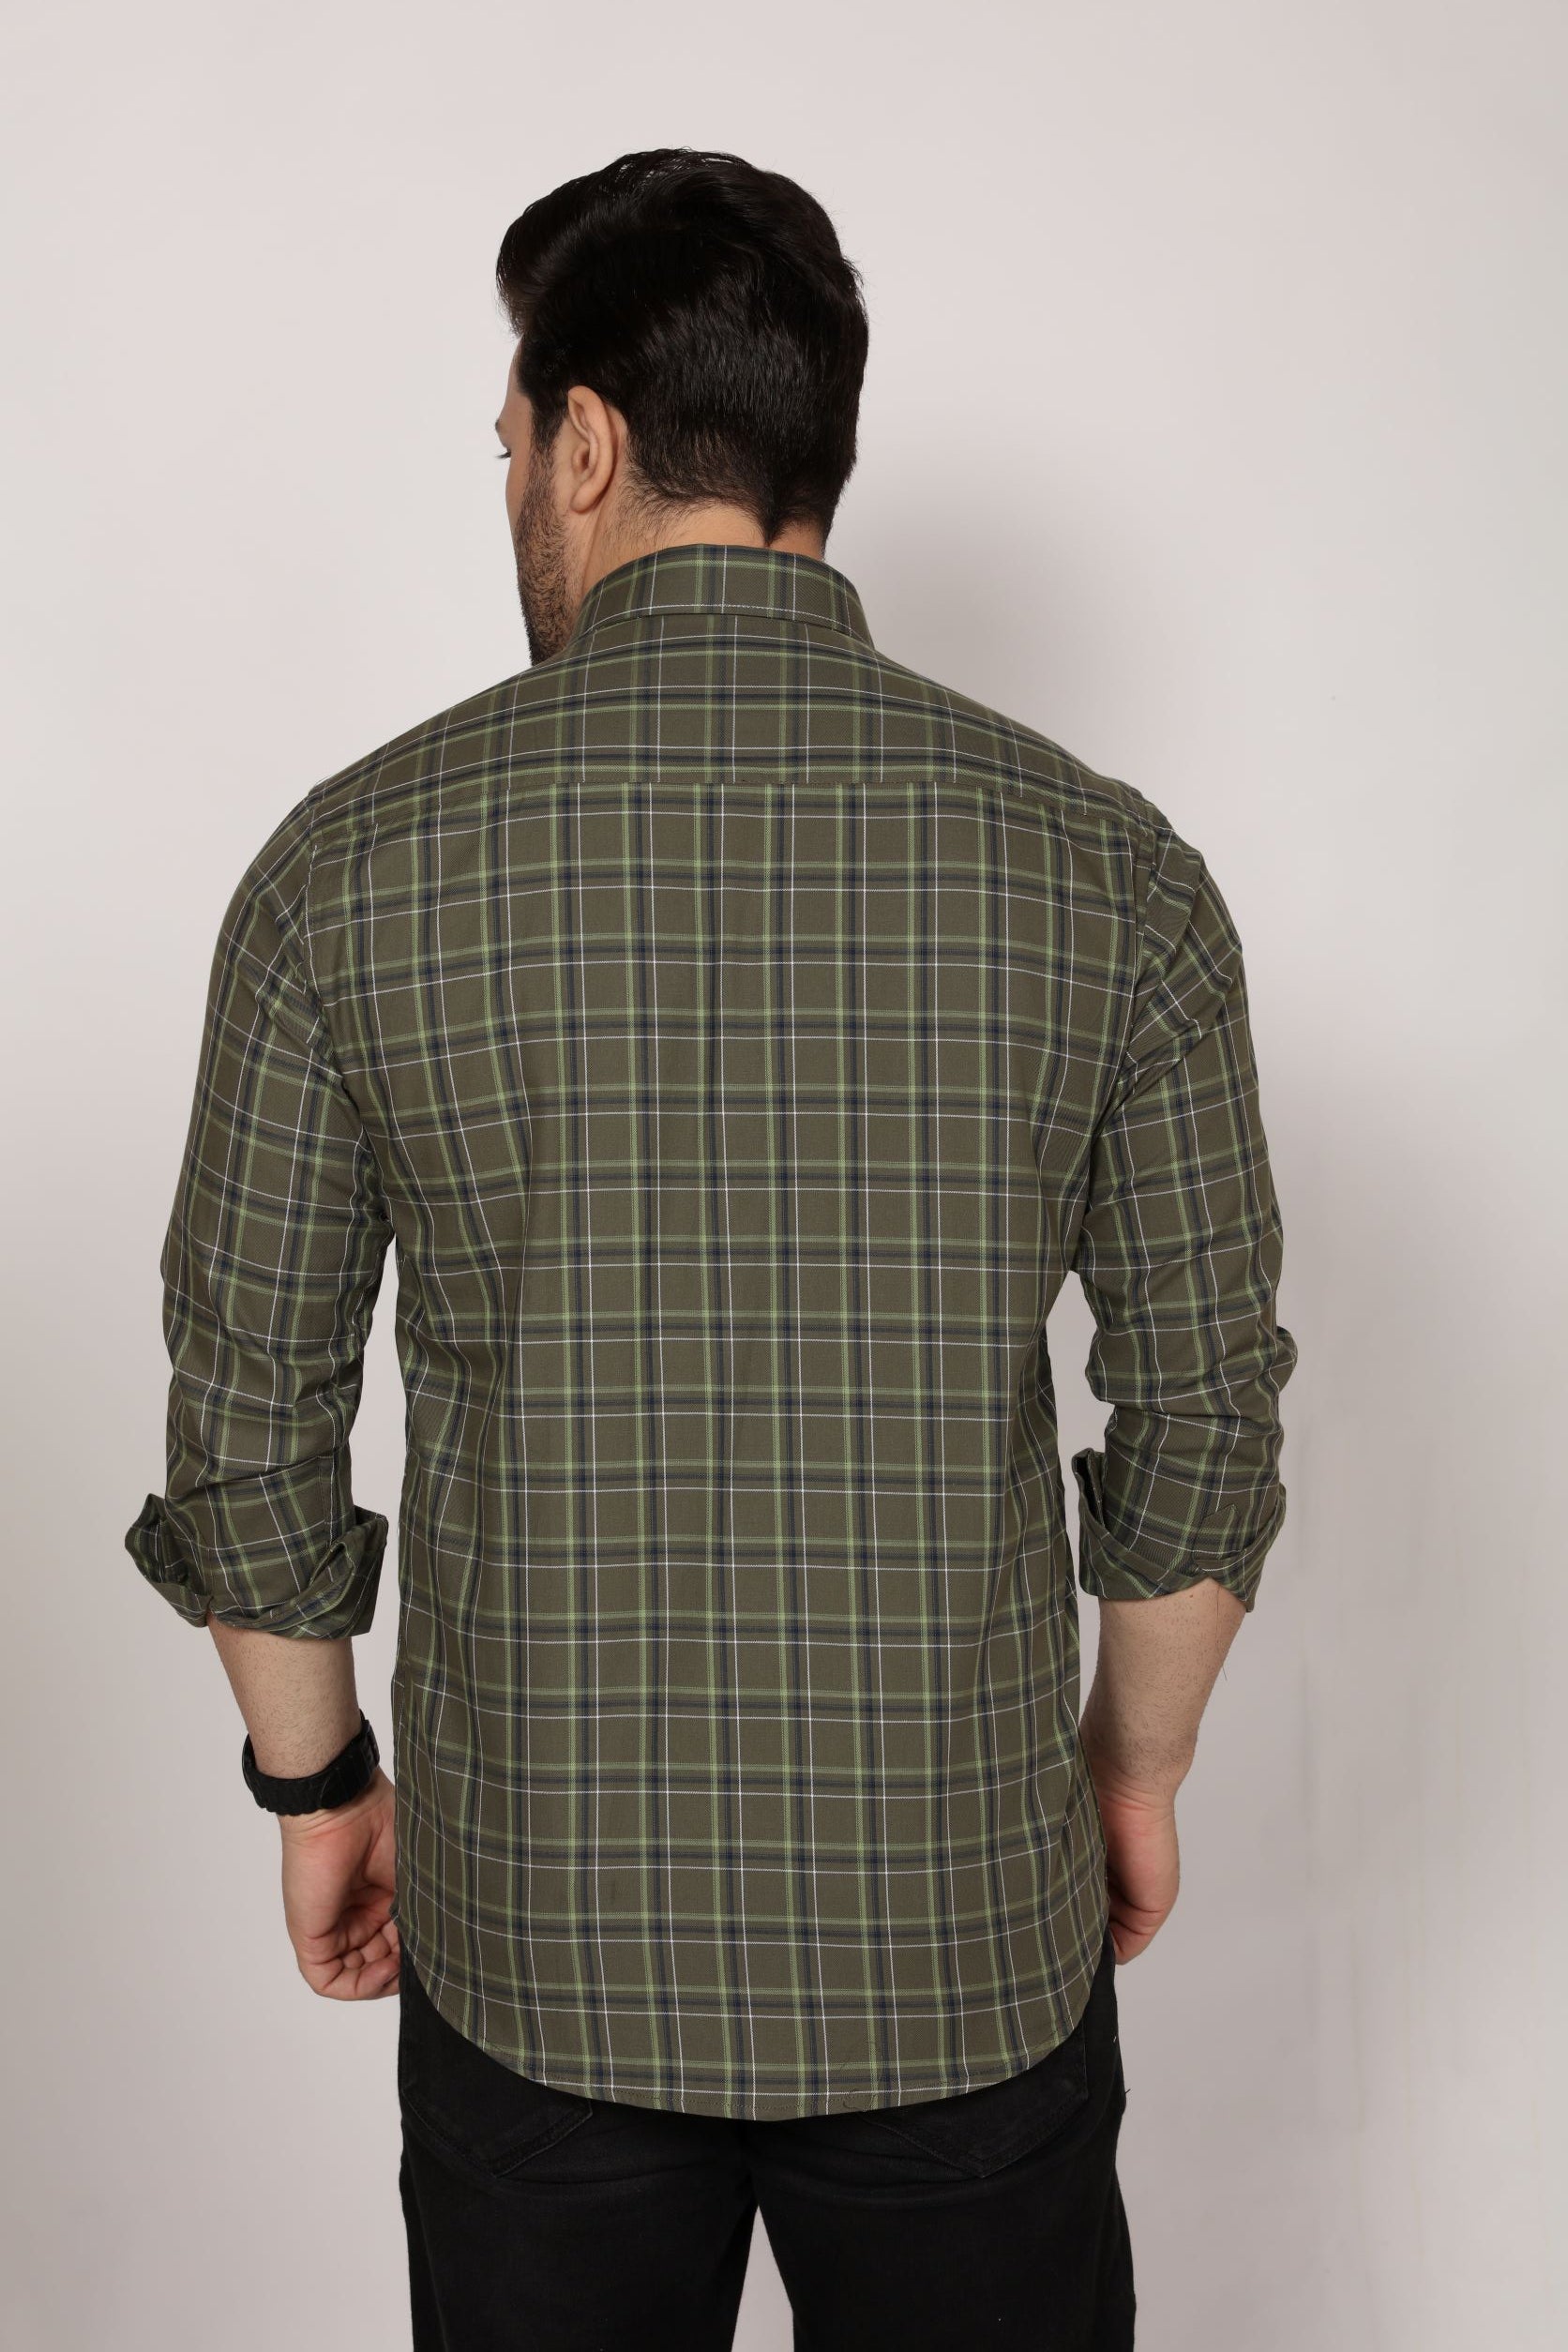 Southampton - Checkered Slim fit shirt - John Watson